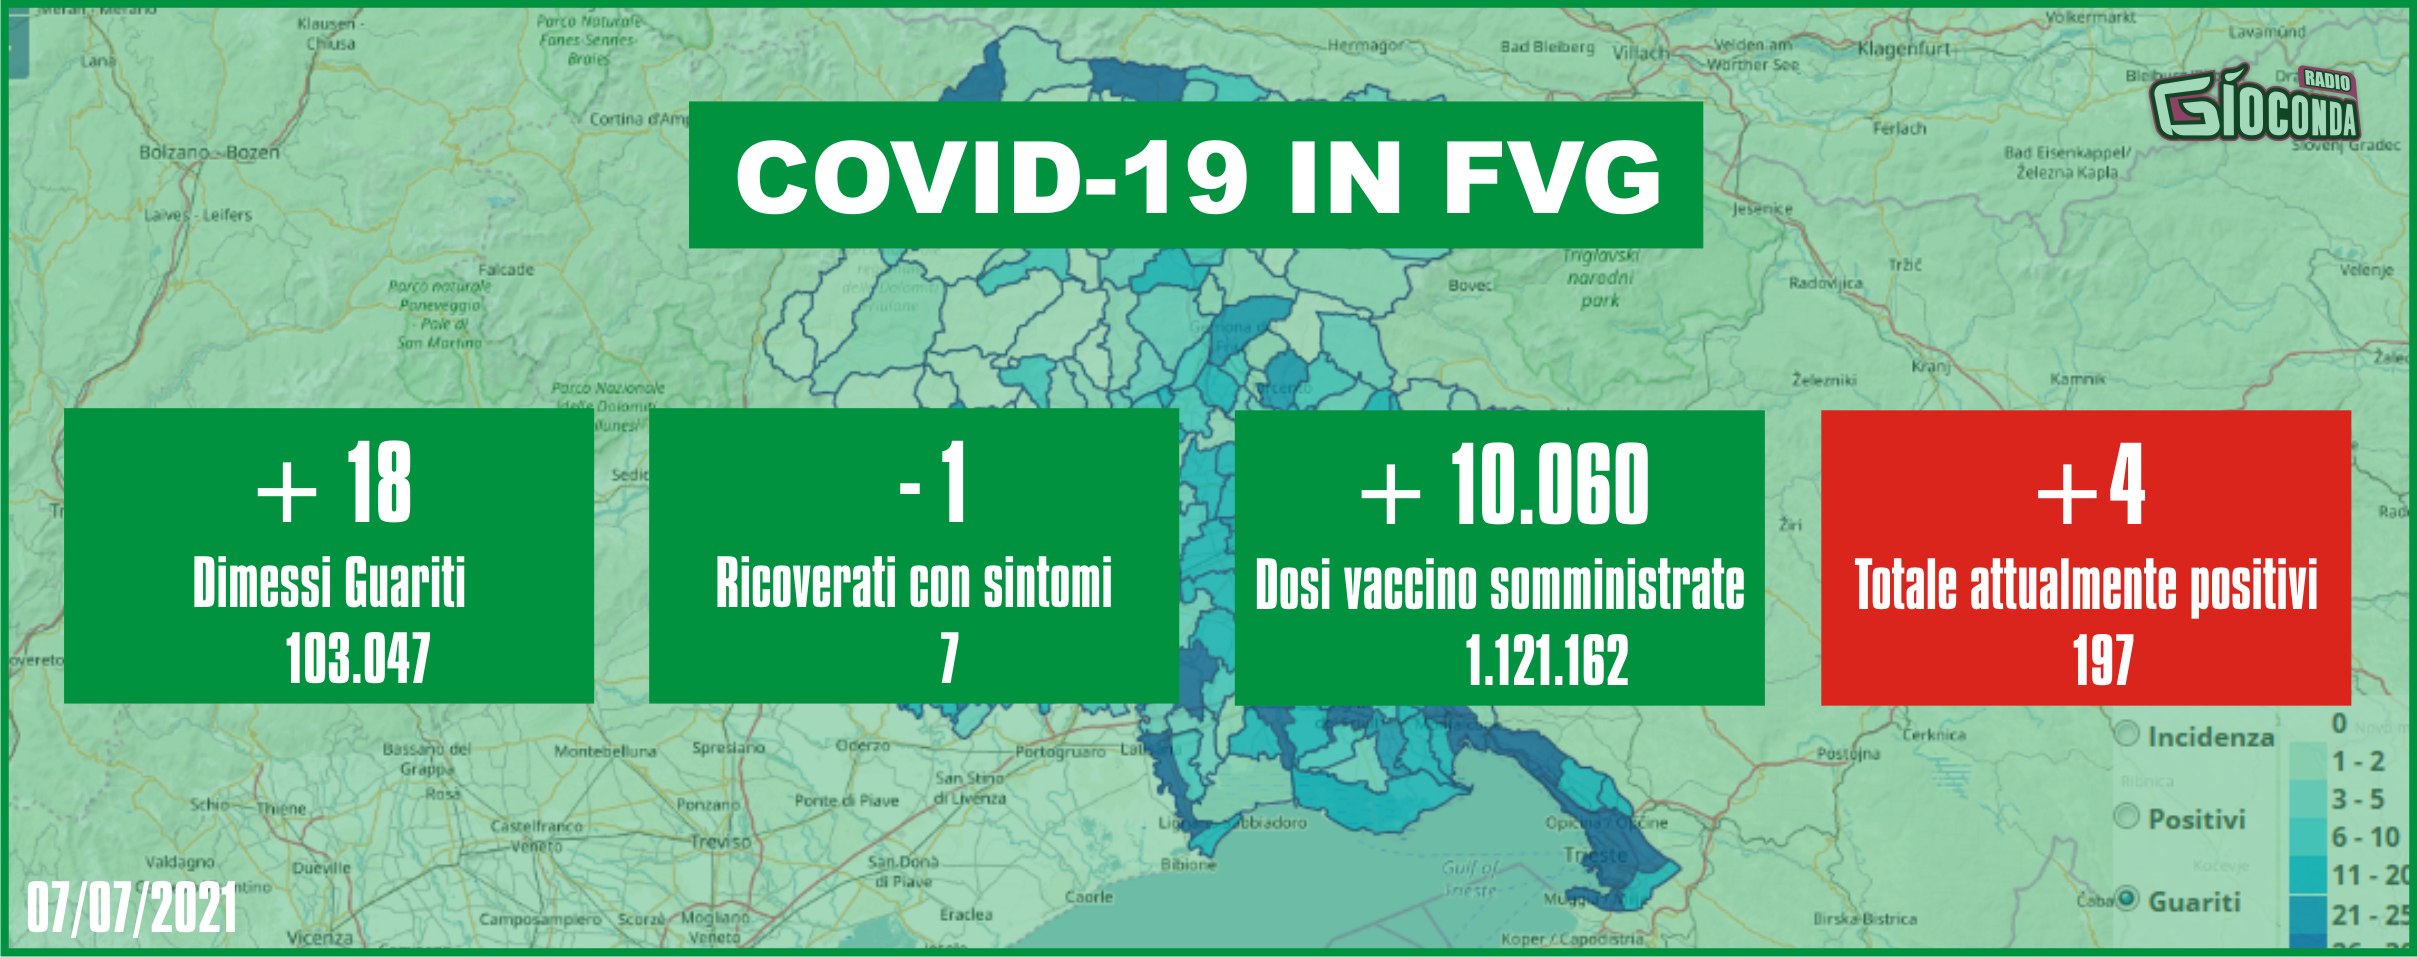 7 luglio 2021 - Aggiornamento casi Covid-19 Dati aggregati quotidiani FRIULI VENEZIA GIULIA